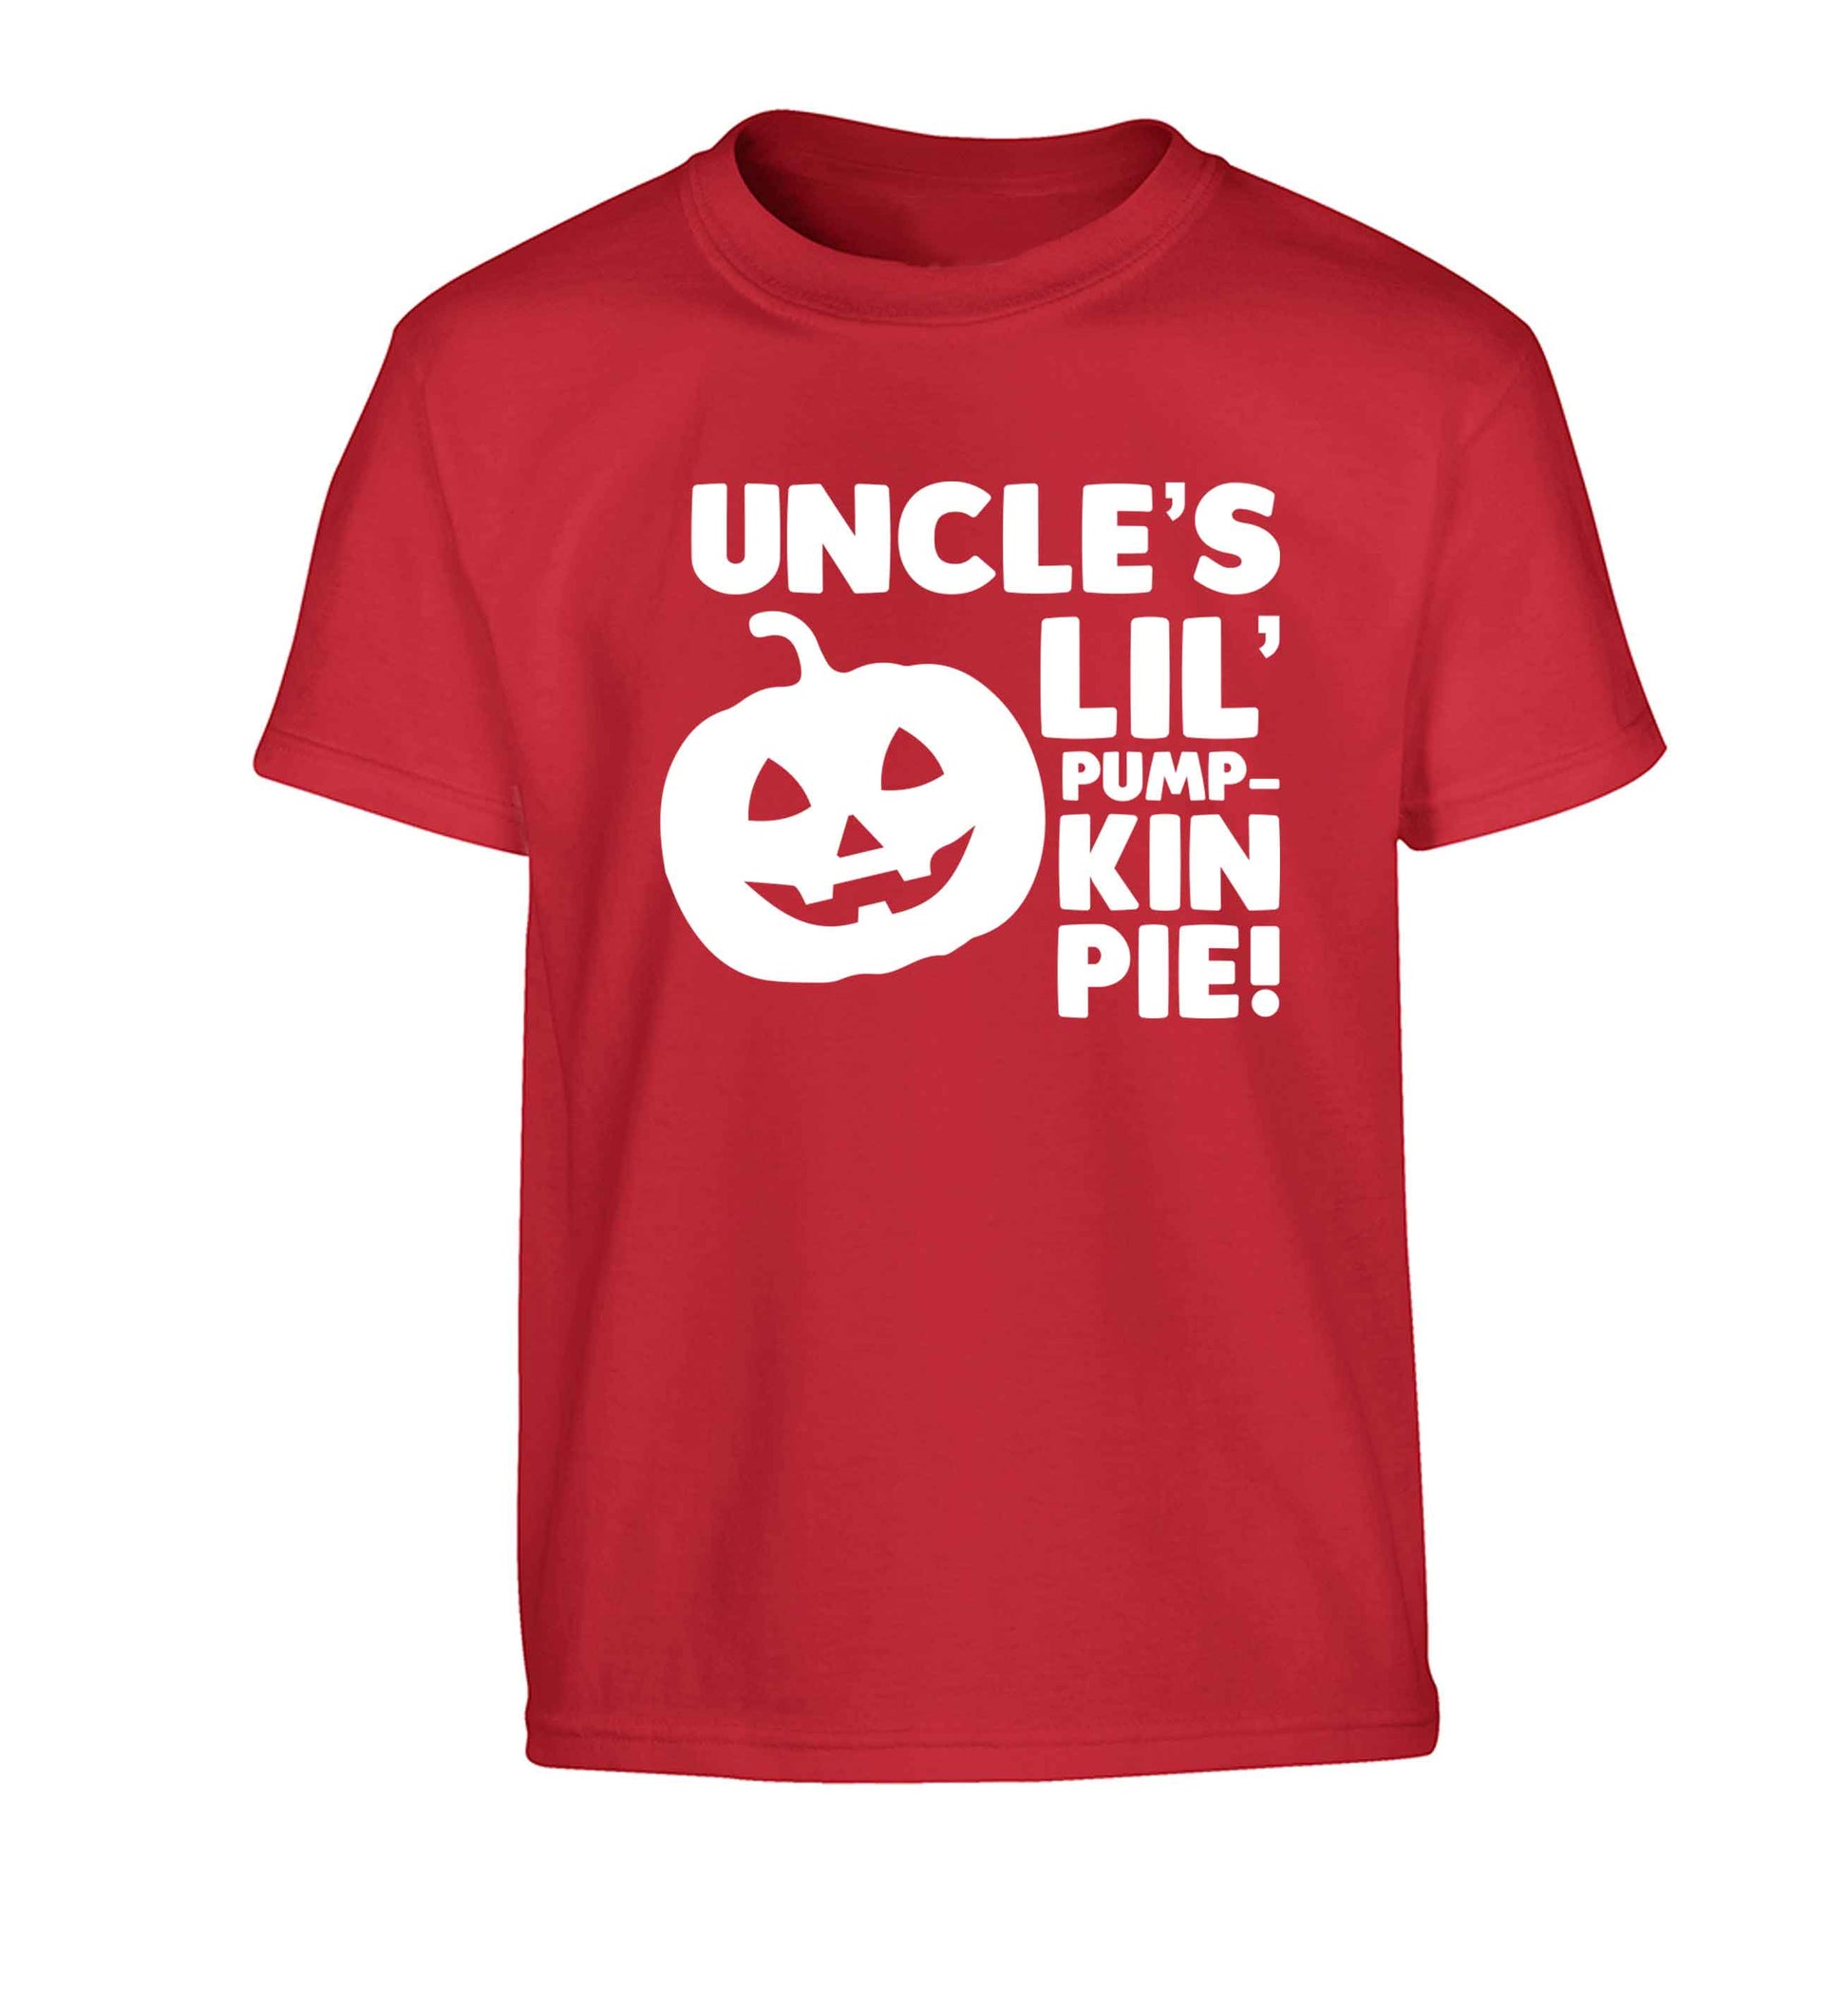 Uncle's lil' pumpkin pie Children's red Tshirt 12-13 Years